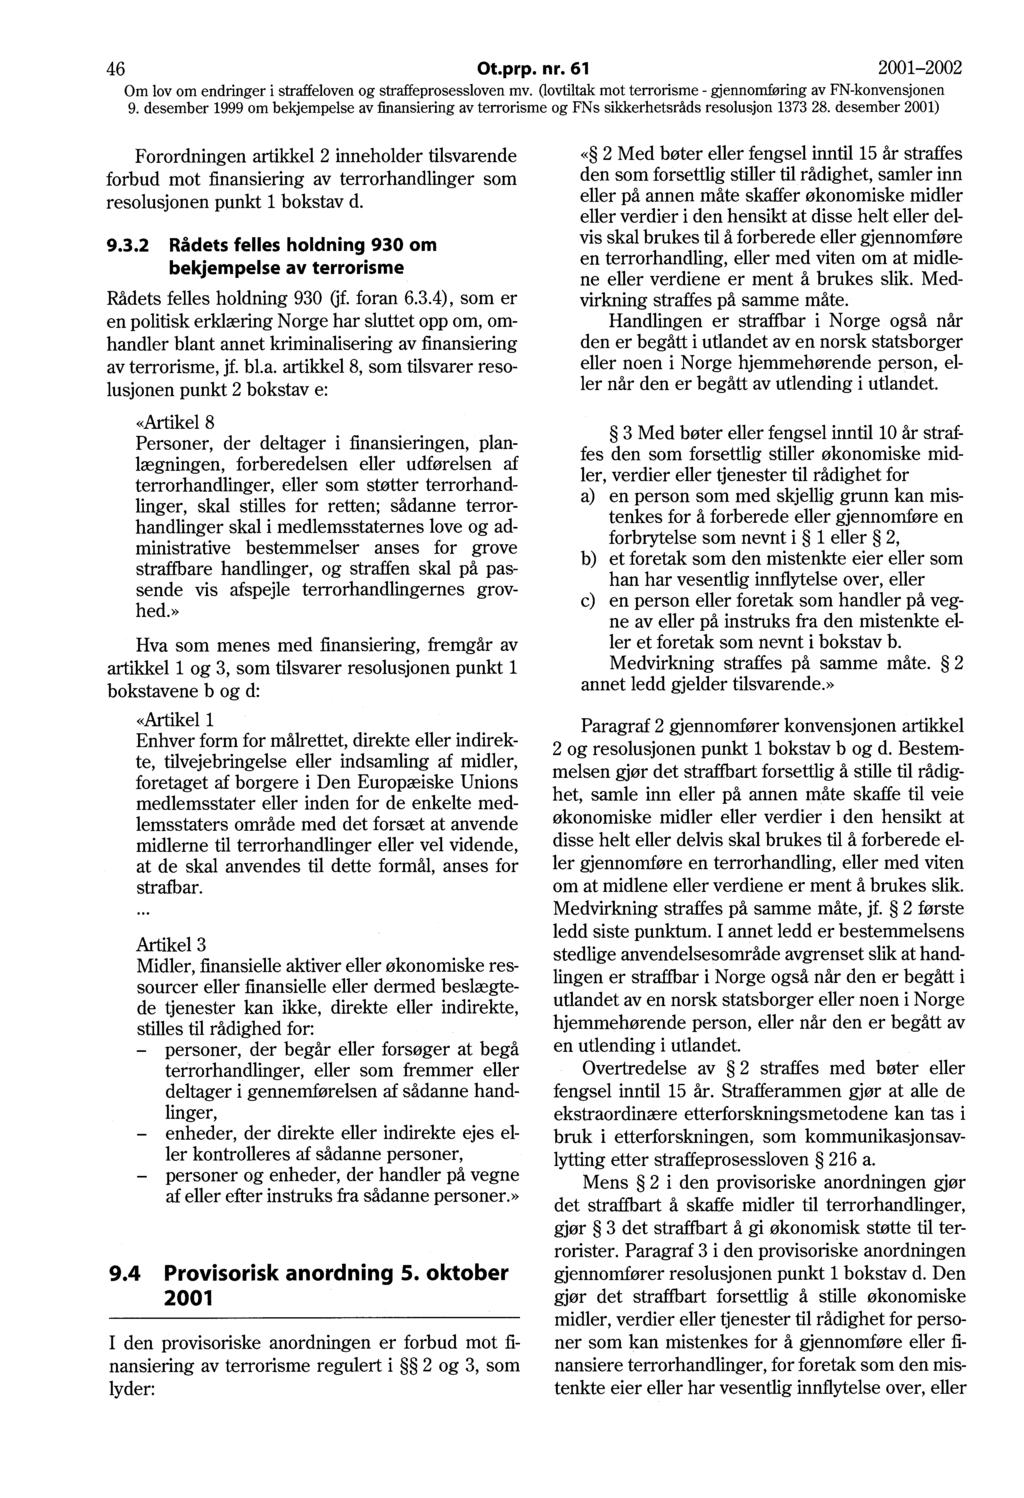 46 Ot.prp. nr. 61 2001-2002 Om lov om endringer i straffeloven og straffeprosessloven mv.